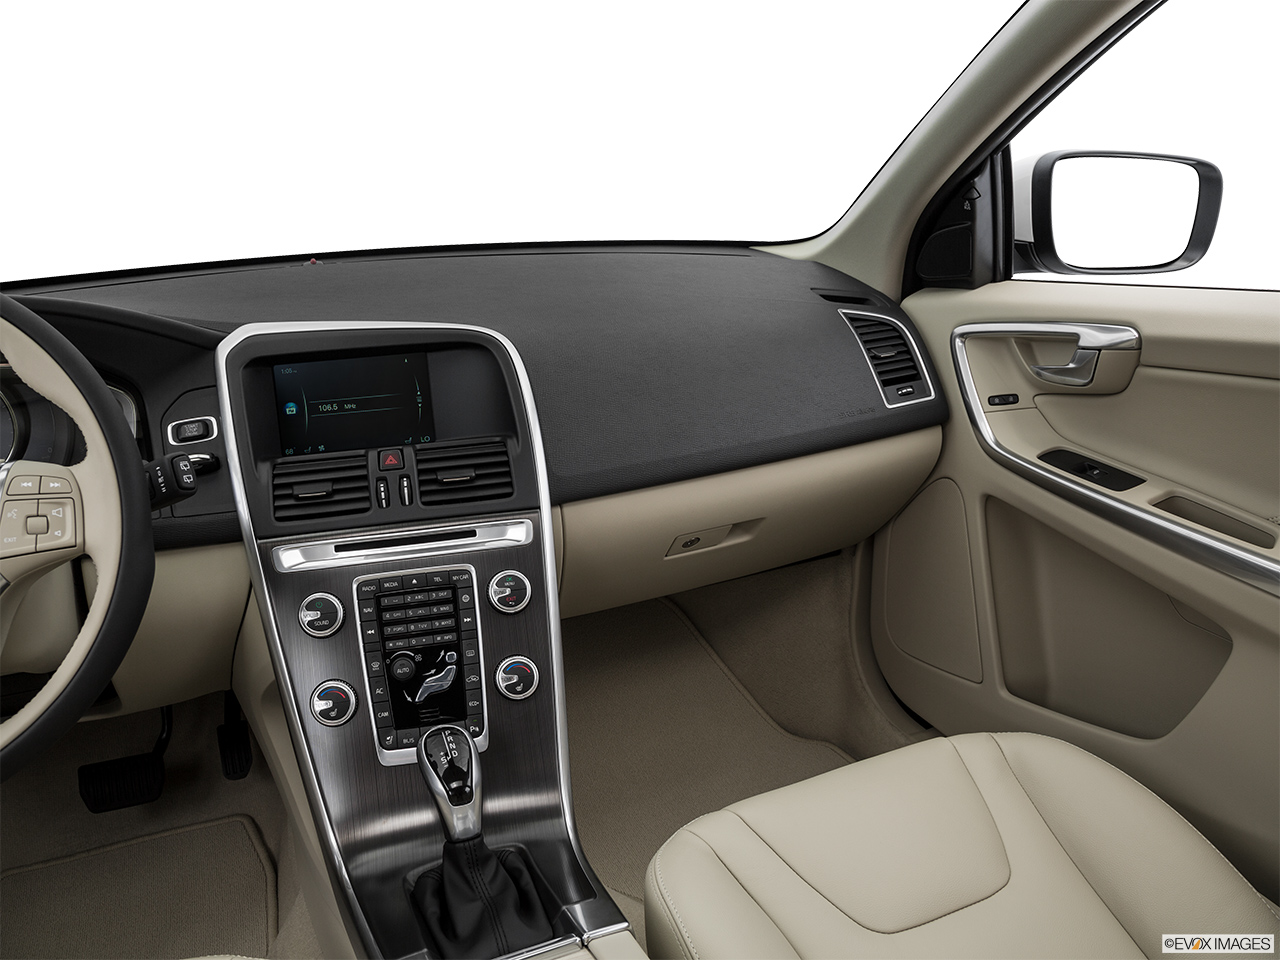 2016 Volvo XC60 T5 Drive-E FWD Premier Center Console/Passenger Side. 